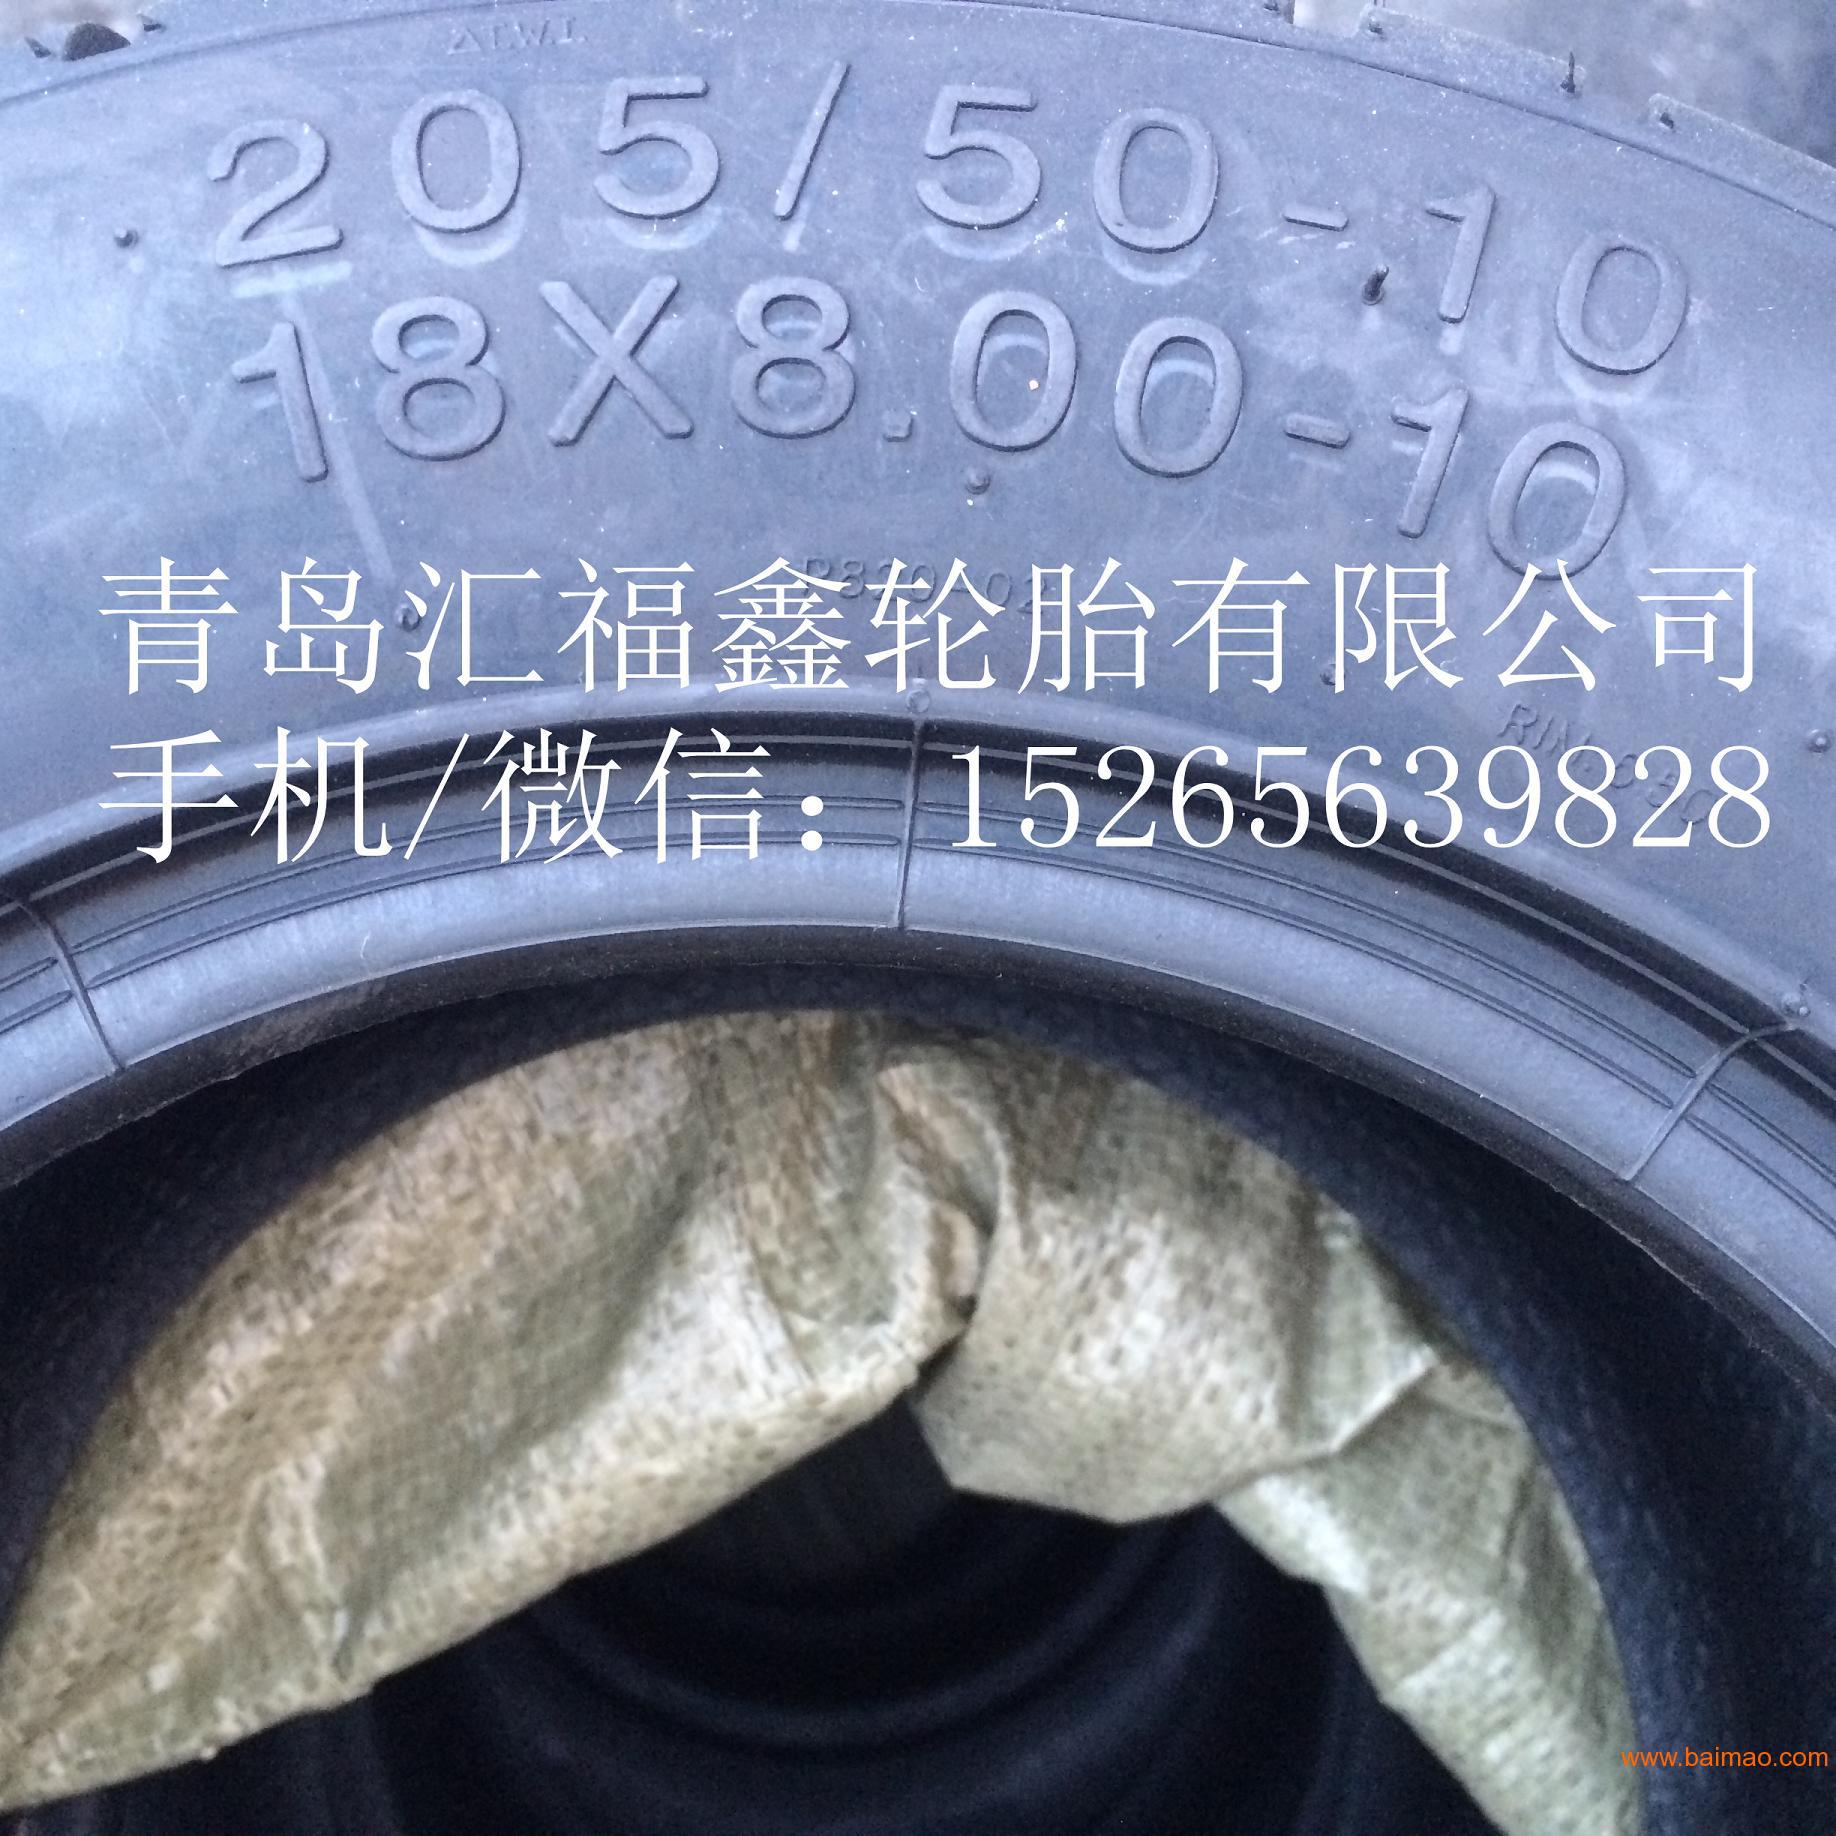 供应18x6.50-8电动巡逻车轮胎ATV 轮胎